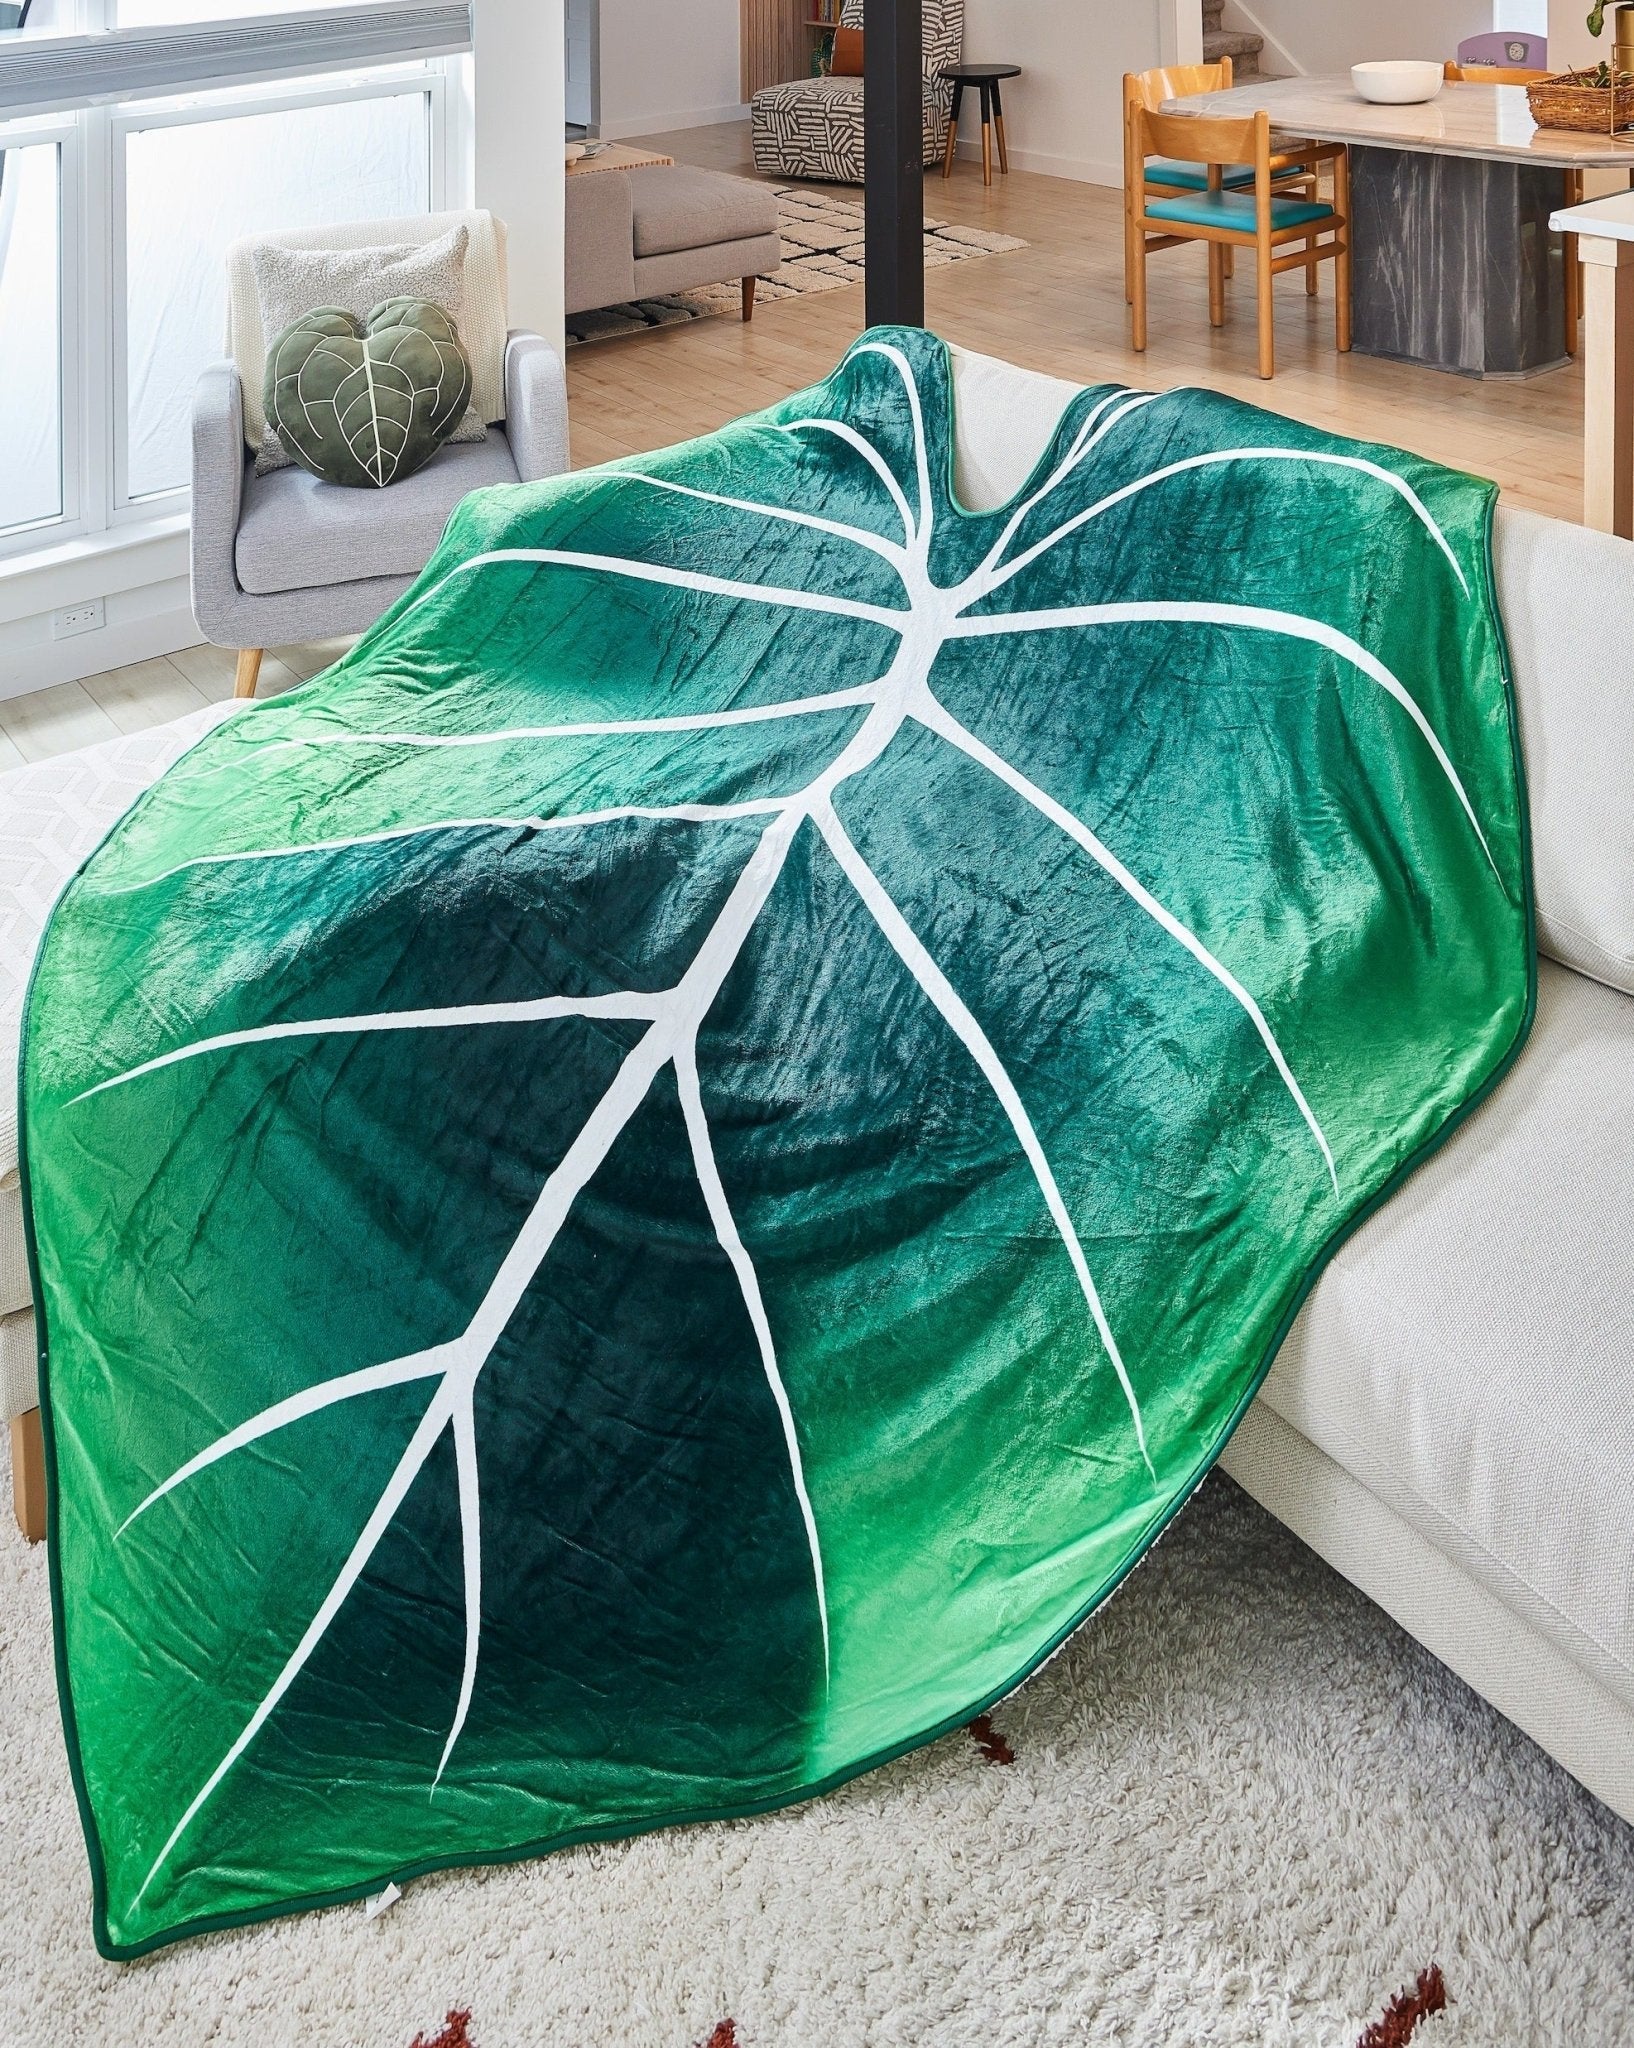 Philodendron Gloriosum Decke - Die entzückende Decke mit einzigartigem Design